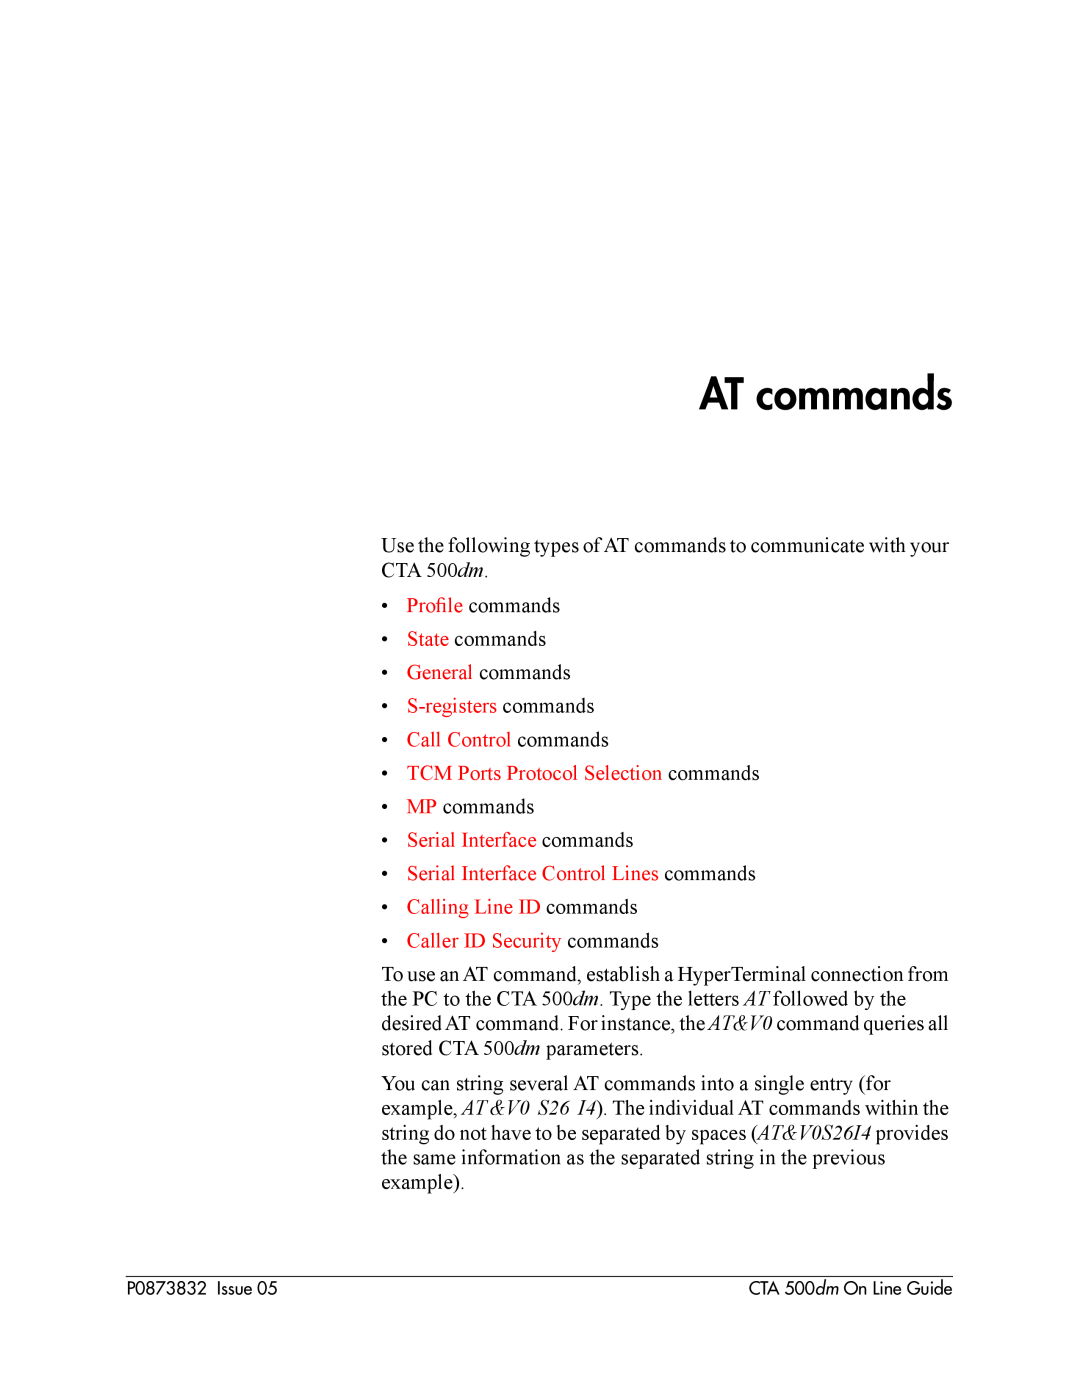 Nortel Networks CTA 500dm manual AT commands, ¥ General commands ¥ S-registers commands ¥ Call Control commands 